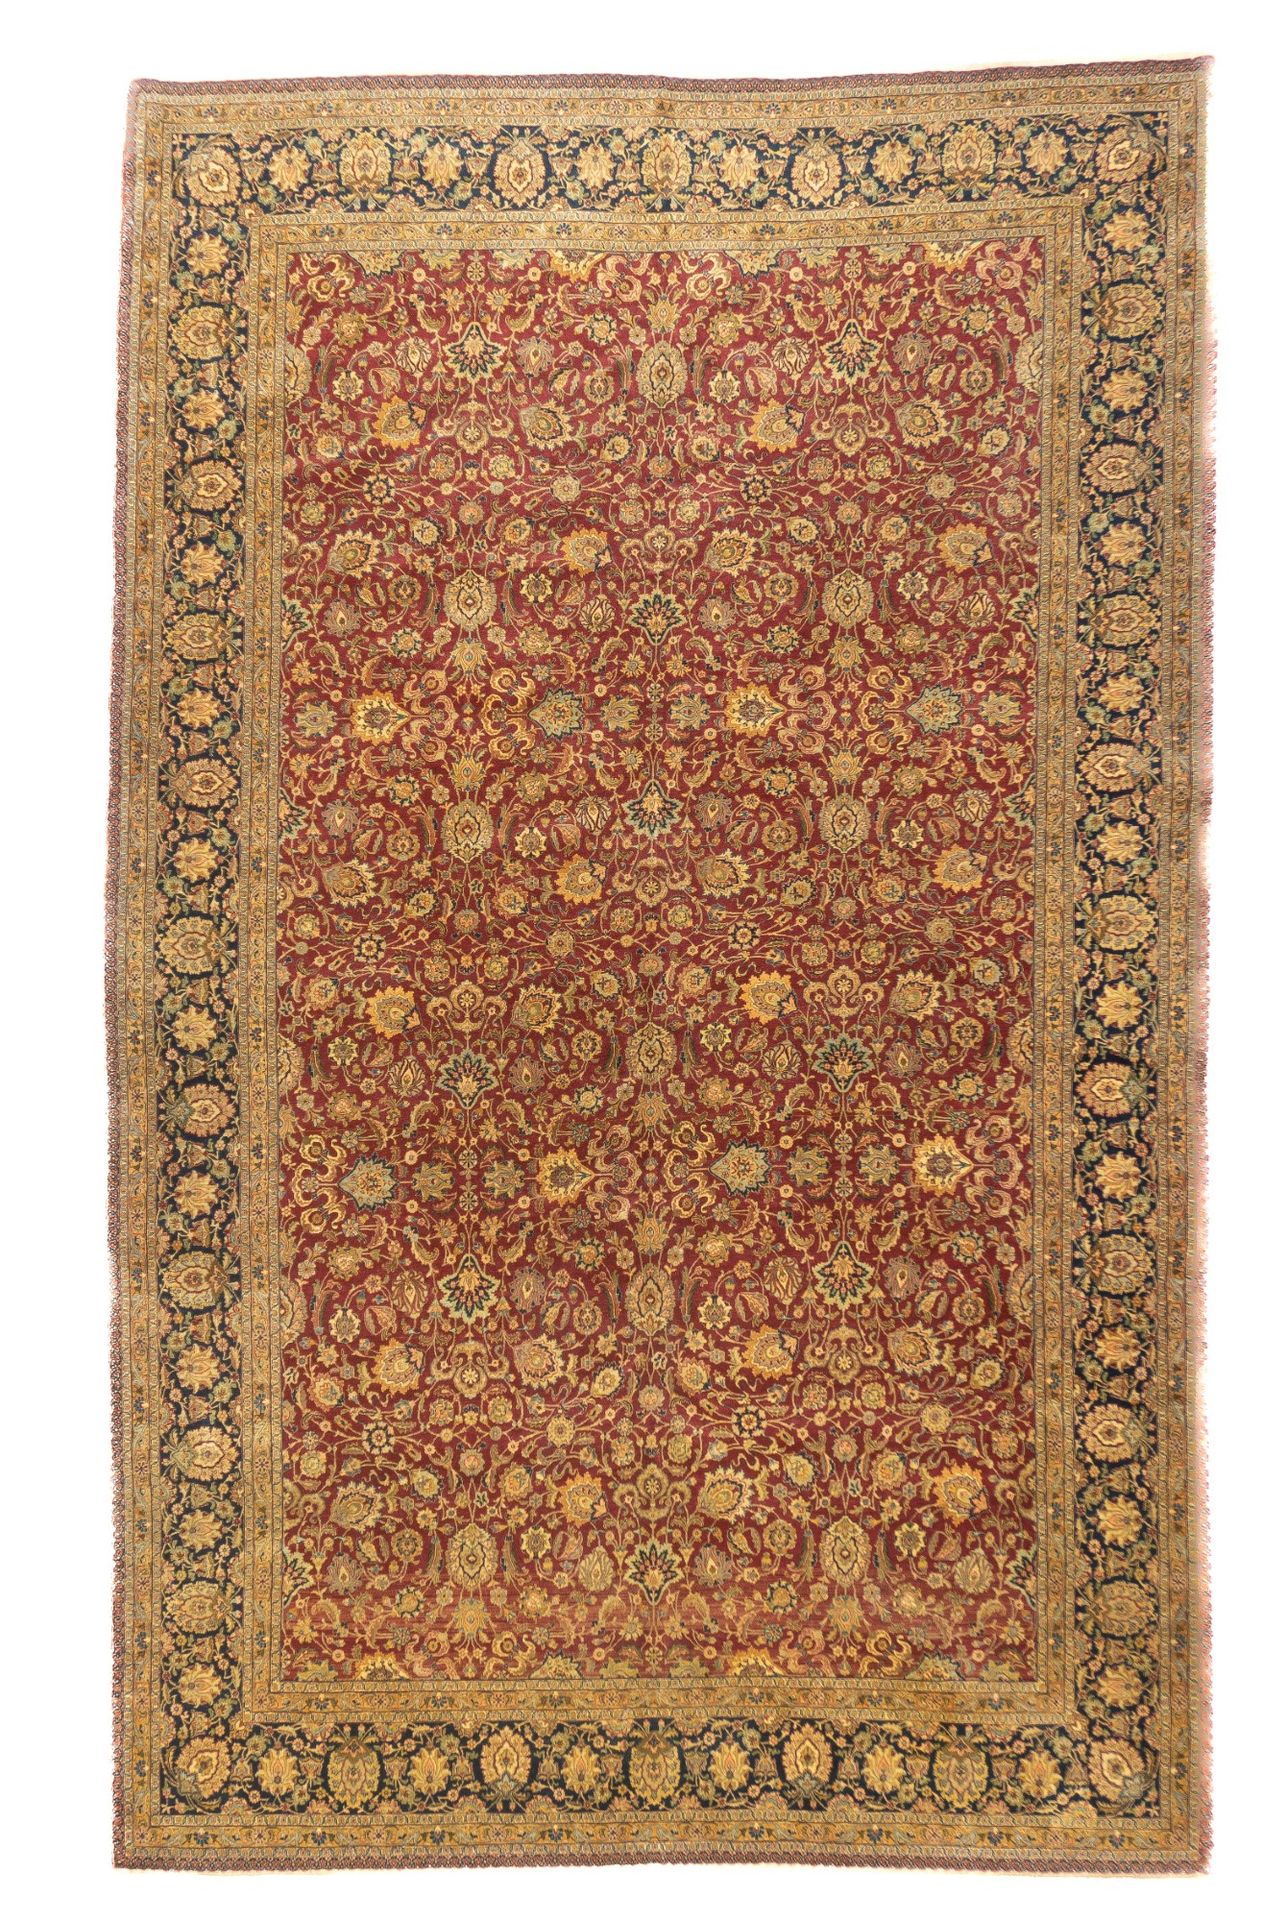 Null Antiker Kashan Teppich, 6'5" x 10'6" ( 1.96 x 3.20 M )